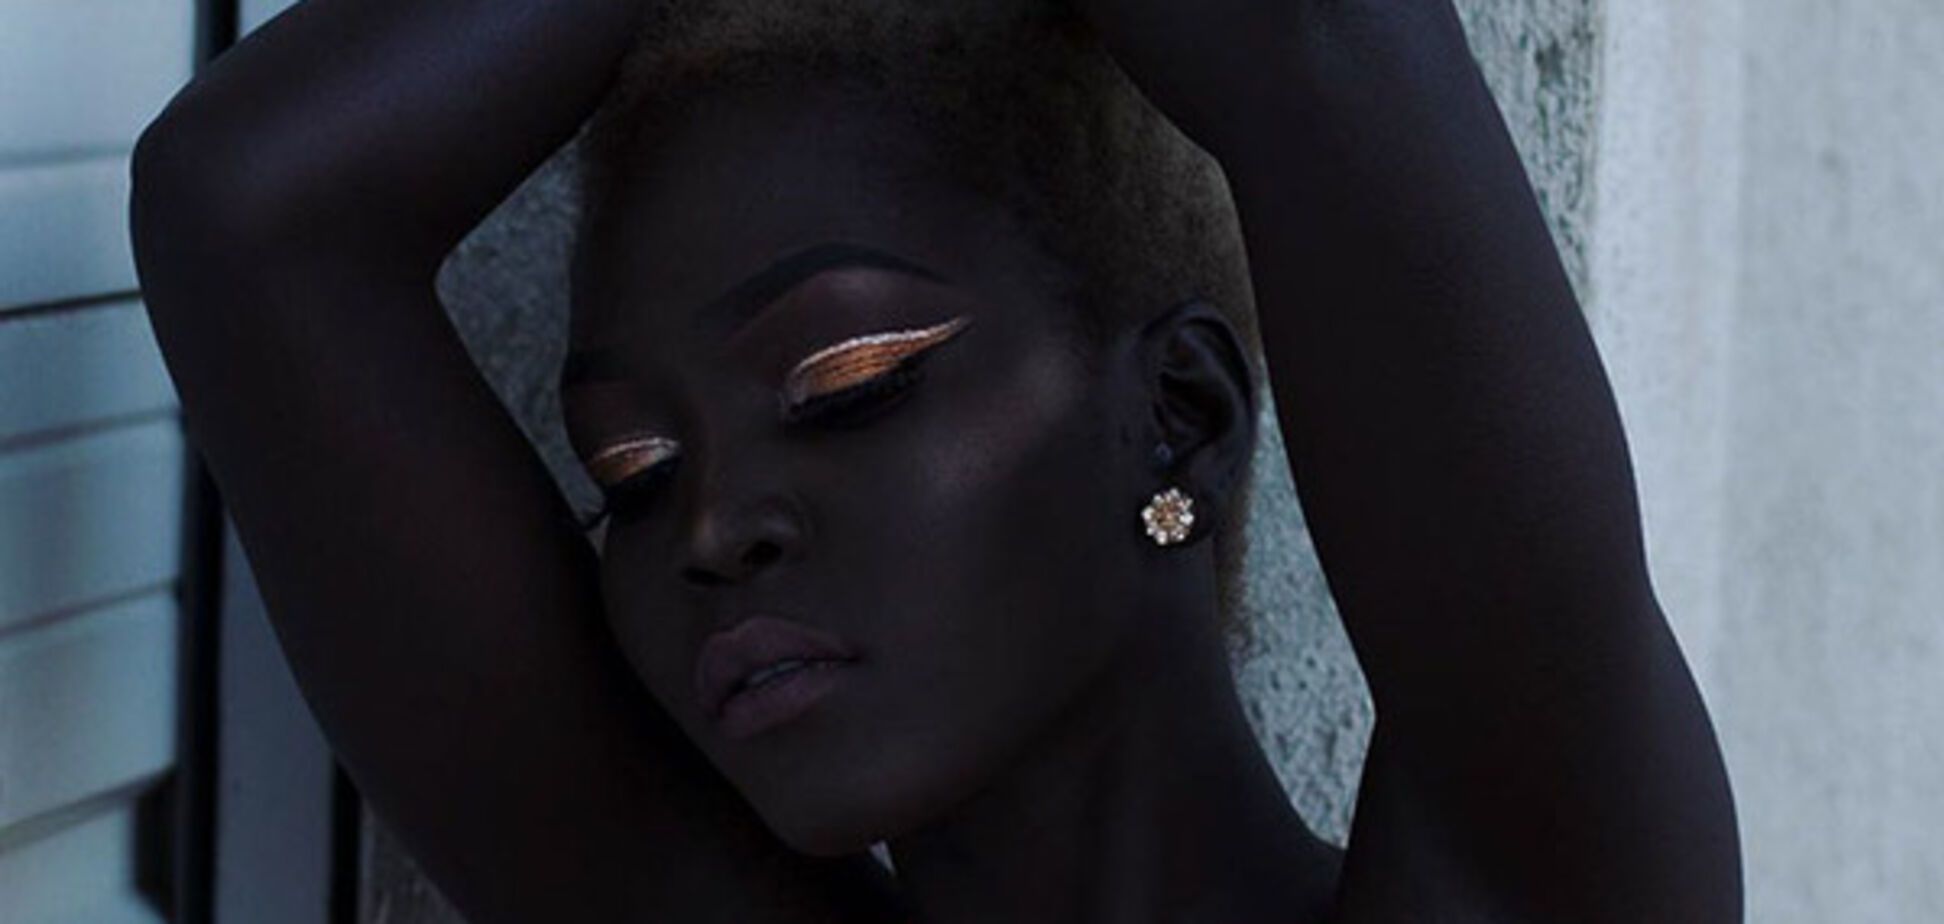 Королева тьмы: интернет покоряет фотомодель с невероятным цветом кожи 